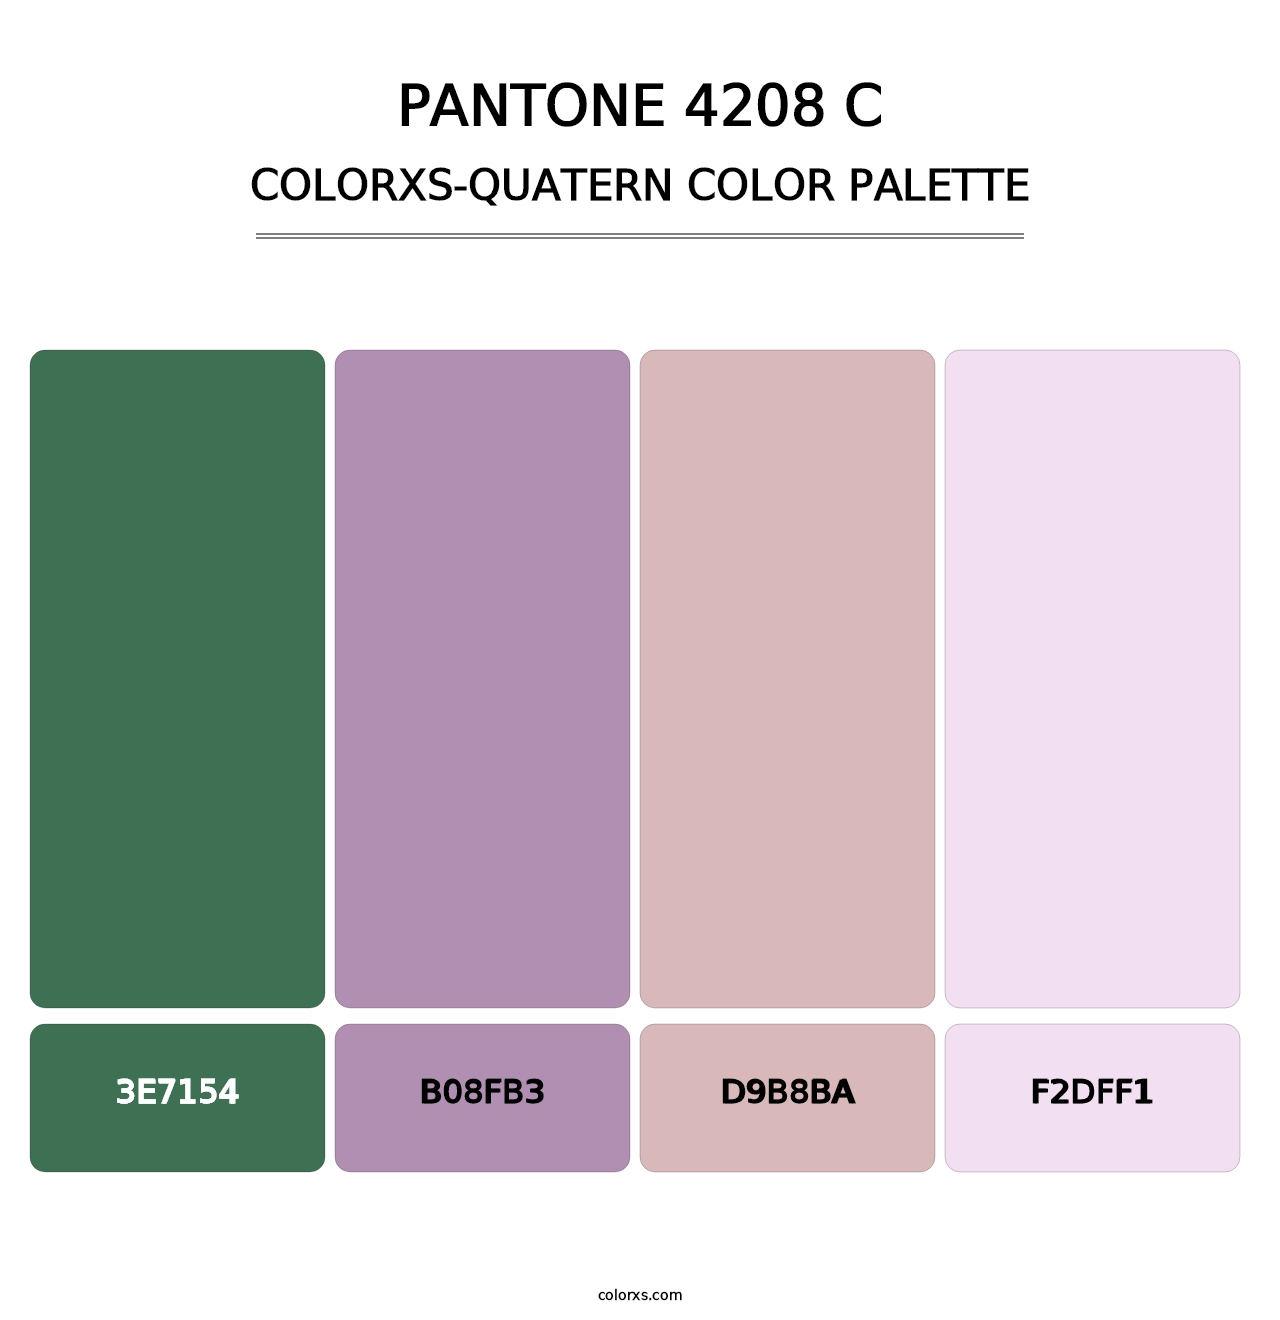 PANTONE 4208 C - Colorxs Quatern Palette